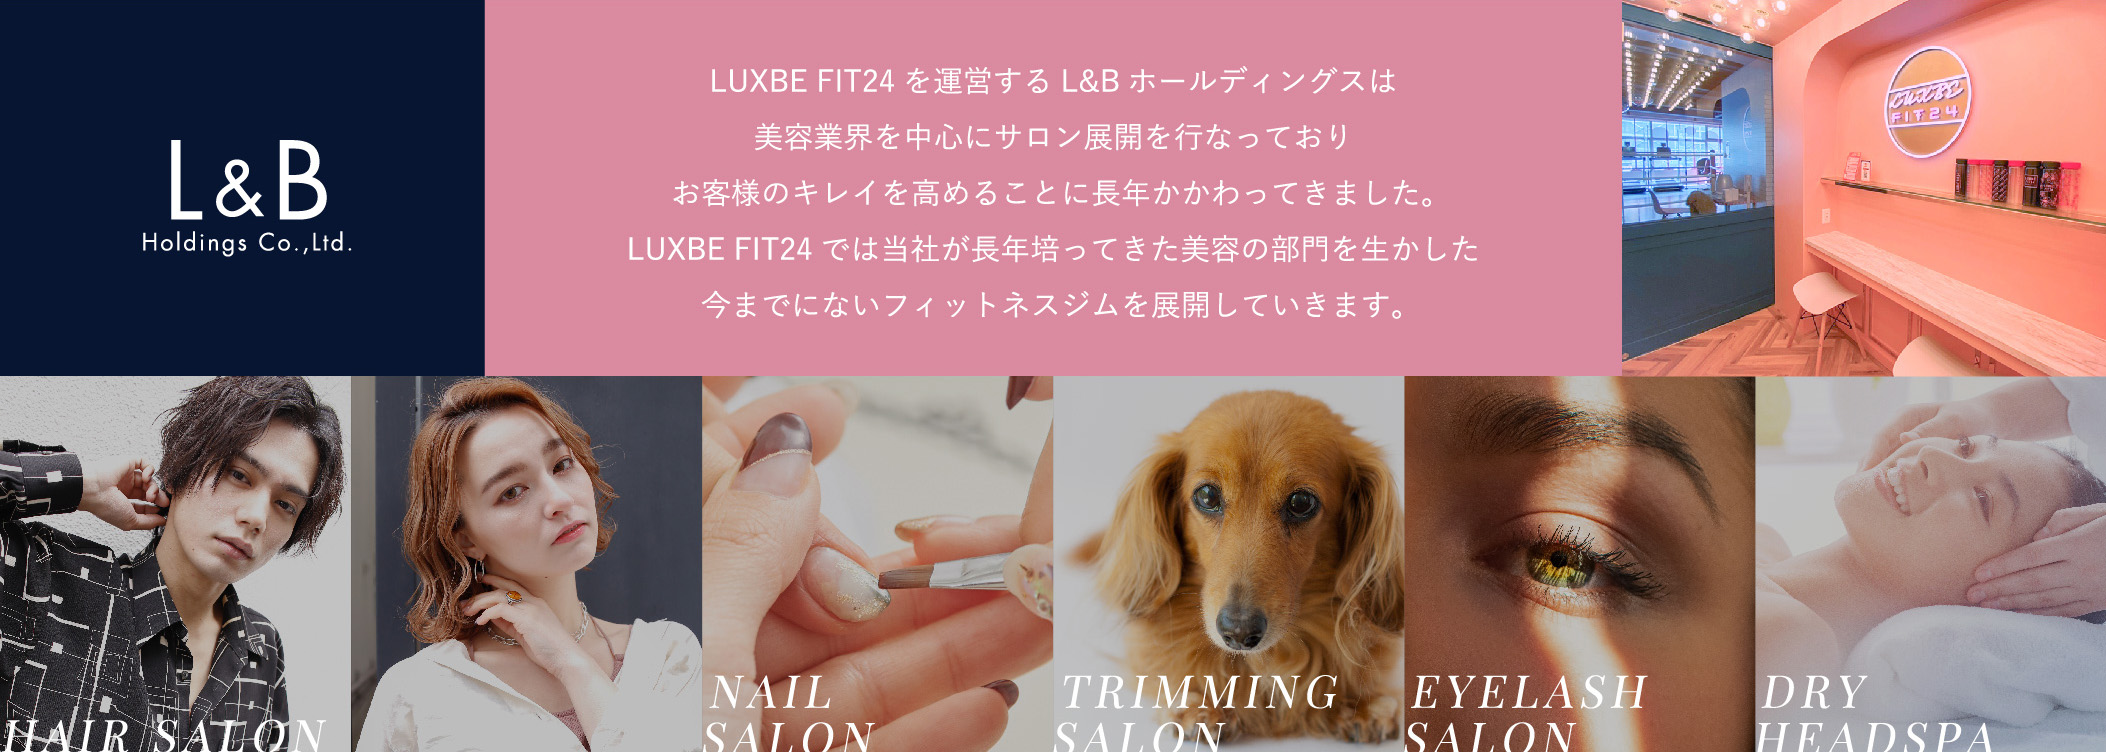 LUXBE FIT24を運営するL&Bホールディングス美容業界を中心にサロン展開を行なっておりお客様のキレイを高めることに長年かかわってきました。LUXBE FIT24では当社が長年培ってきた美容の部門を生かした今までにないフィットネスジムを展開していきます。